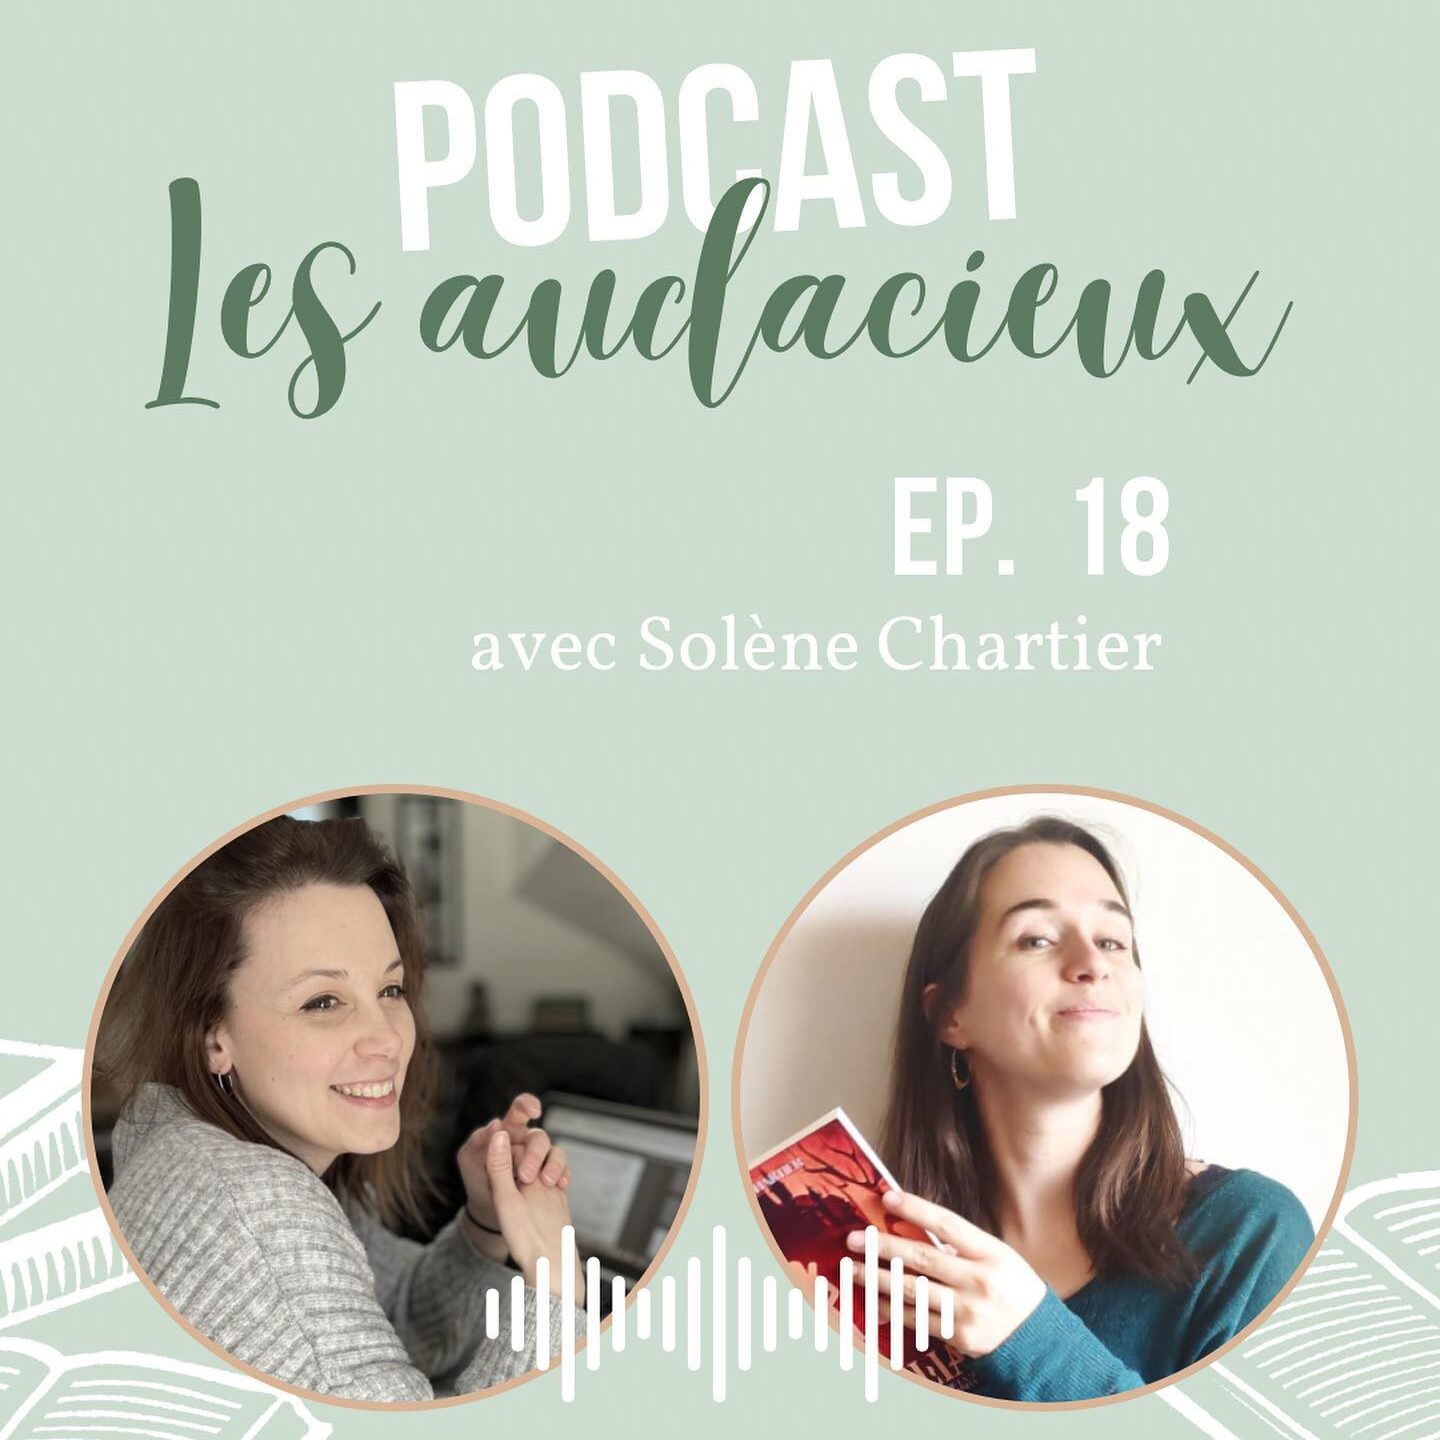 Solène Chartier passe dans le podcast Les audacieux, spécialisé en autoédition